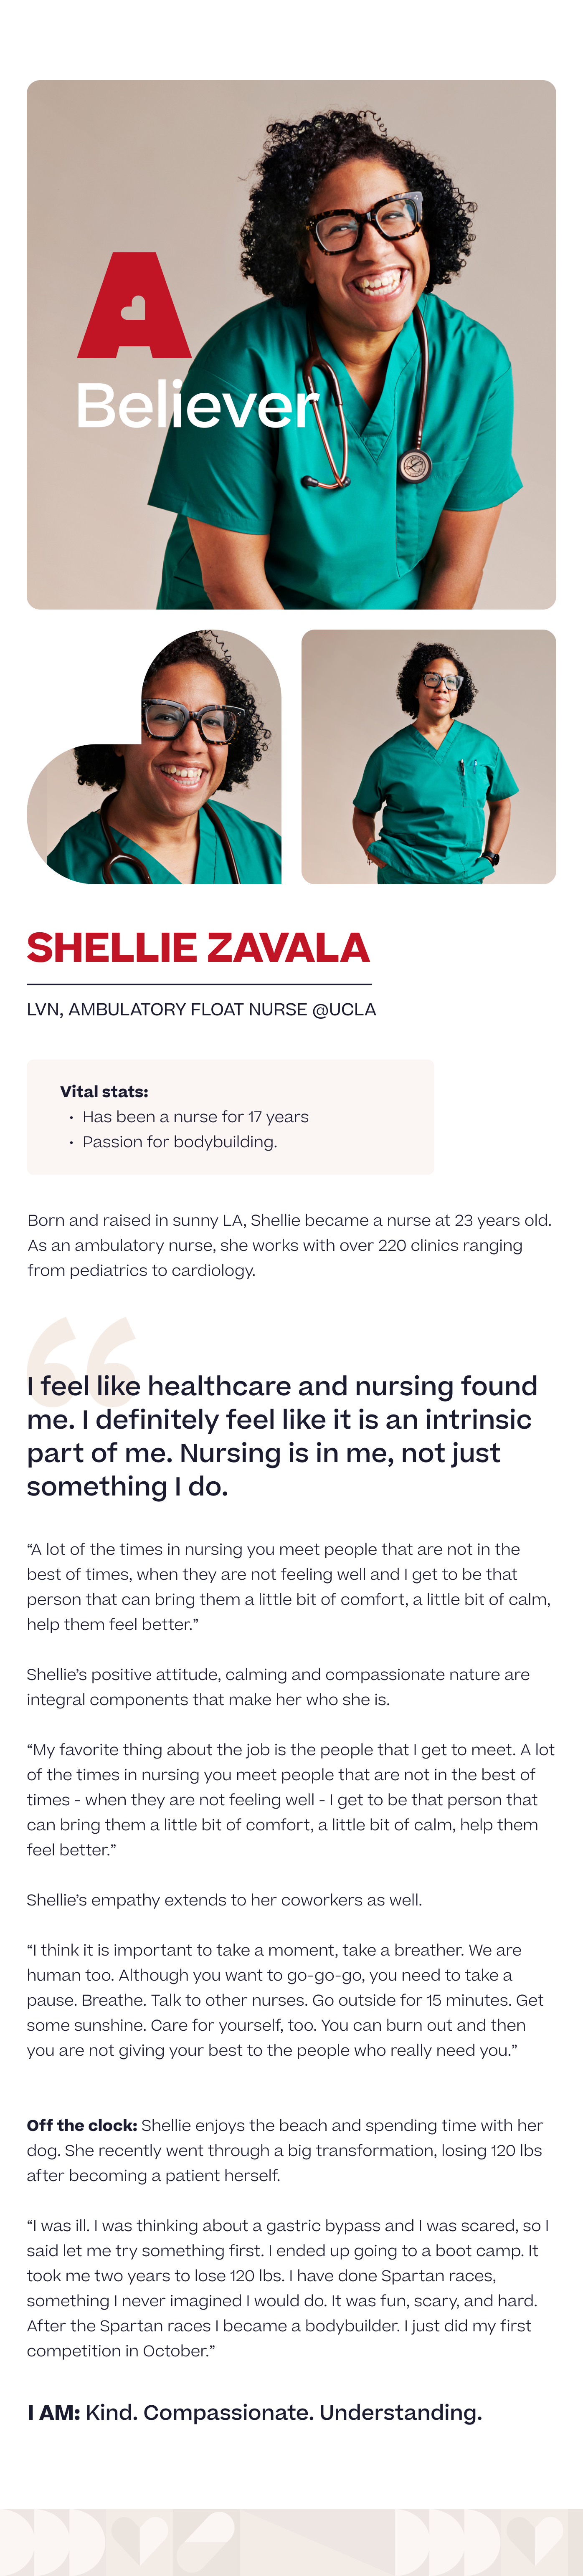 About Shellie Zavala, LVN, ambulatory float nurse at UCLA.